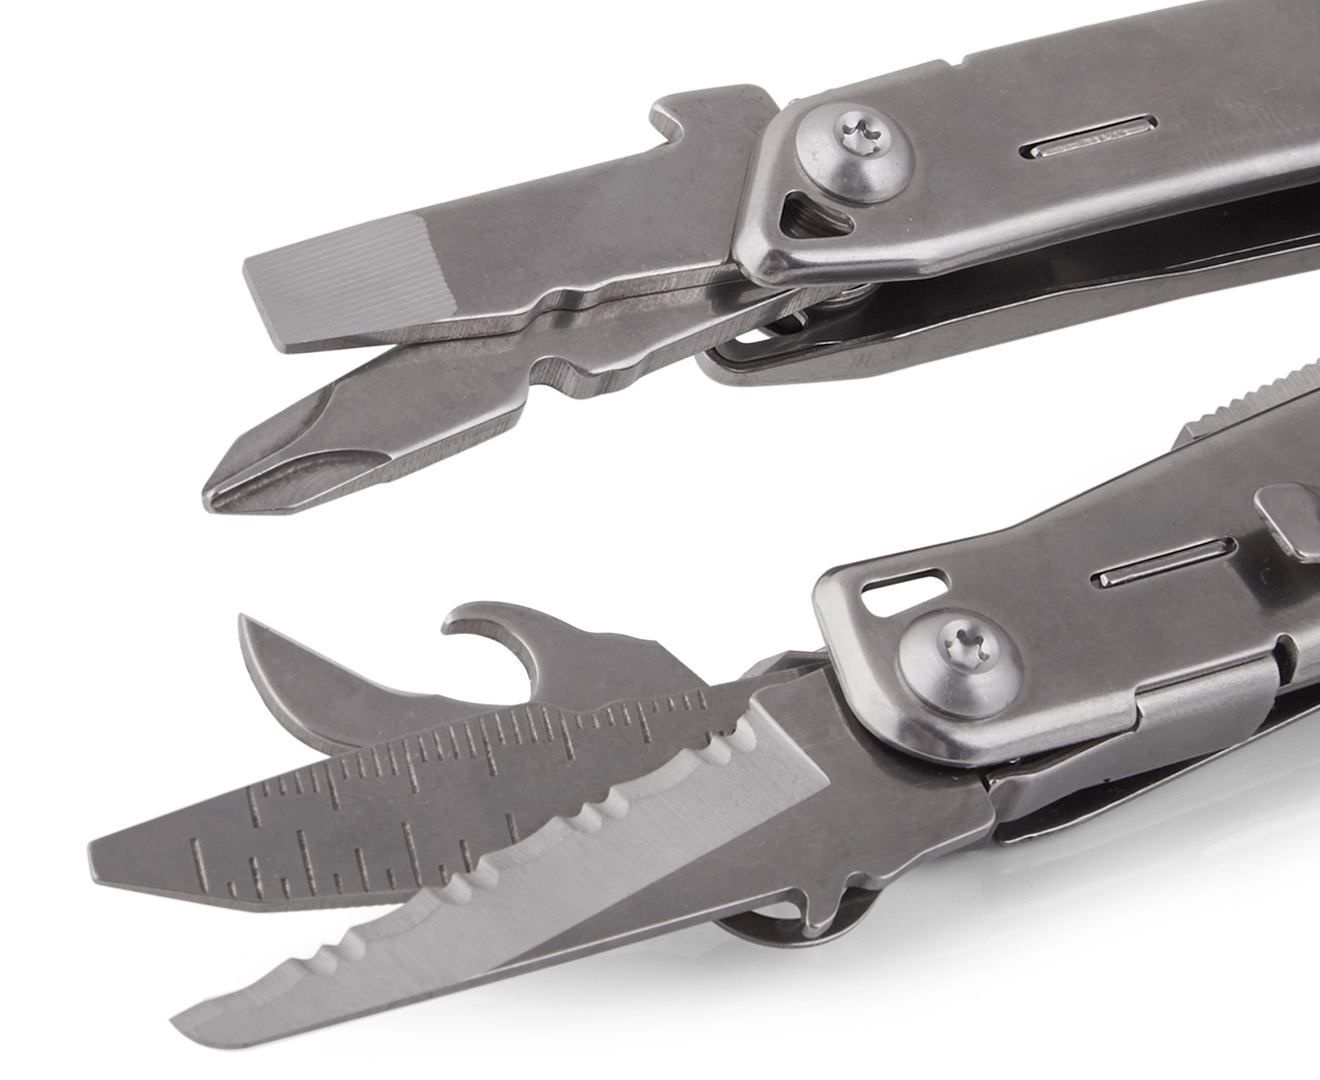 Leatherman Sidekick 14-In-1 Multi Tool - Silver | Catch.co.nz